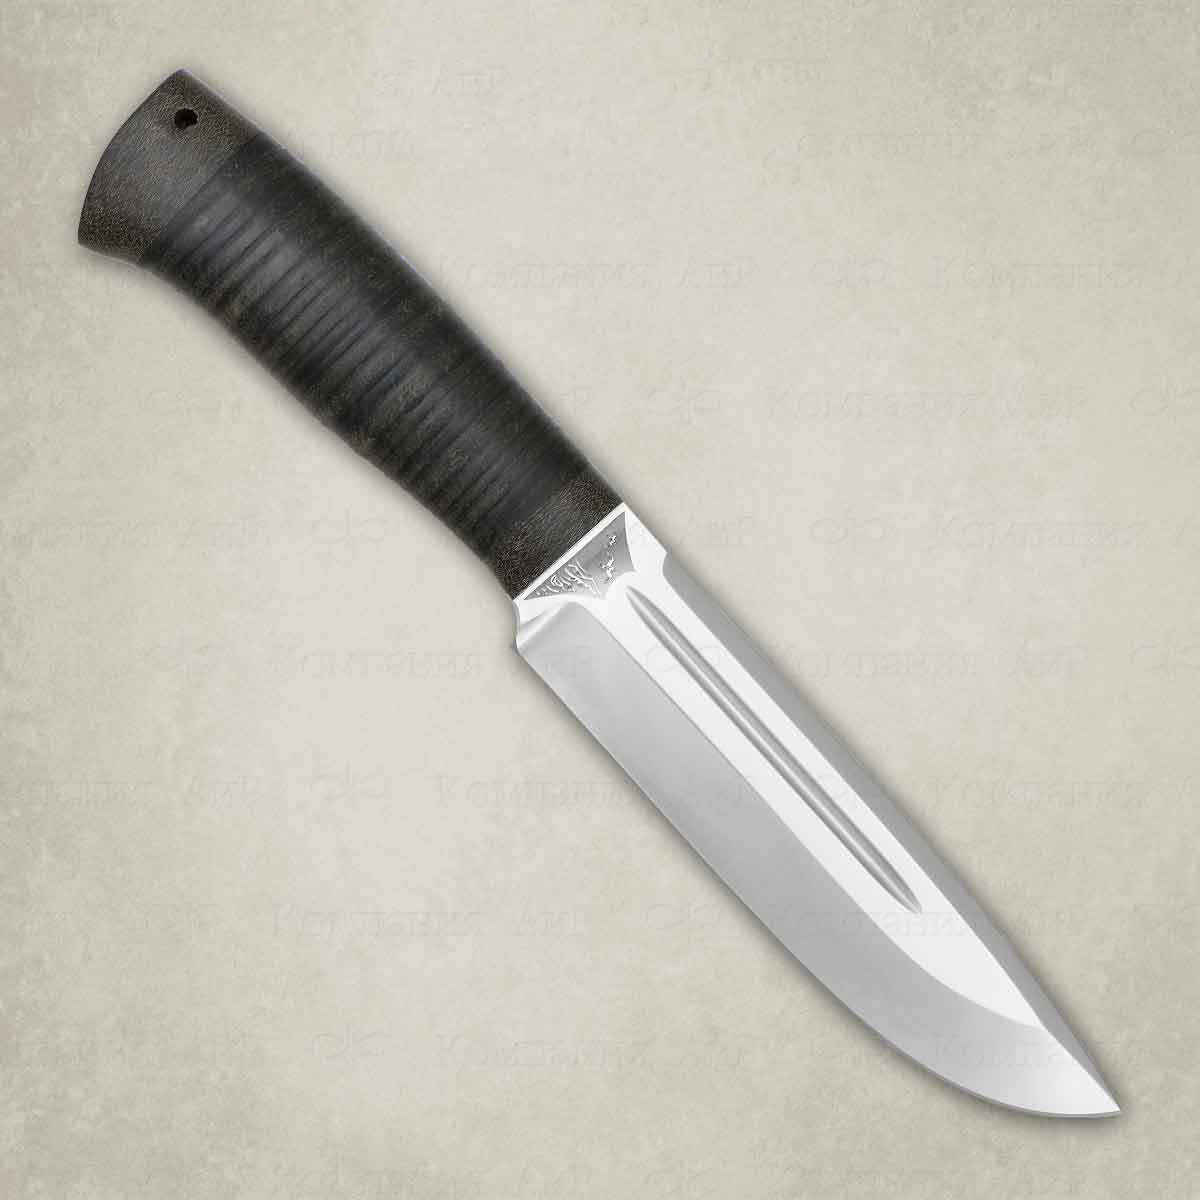 Нож разделочный "Селигер" кожа, АиР от Ножиков